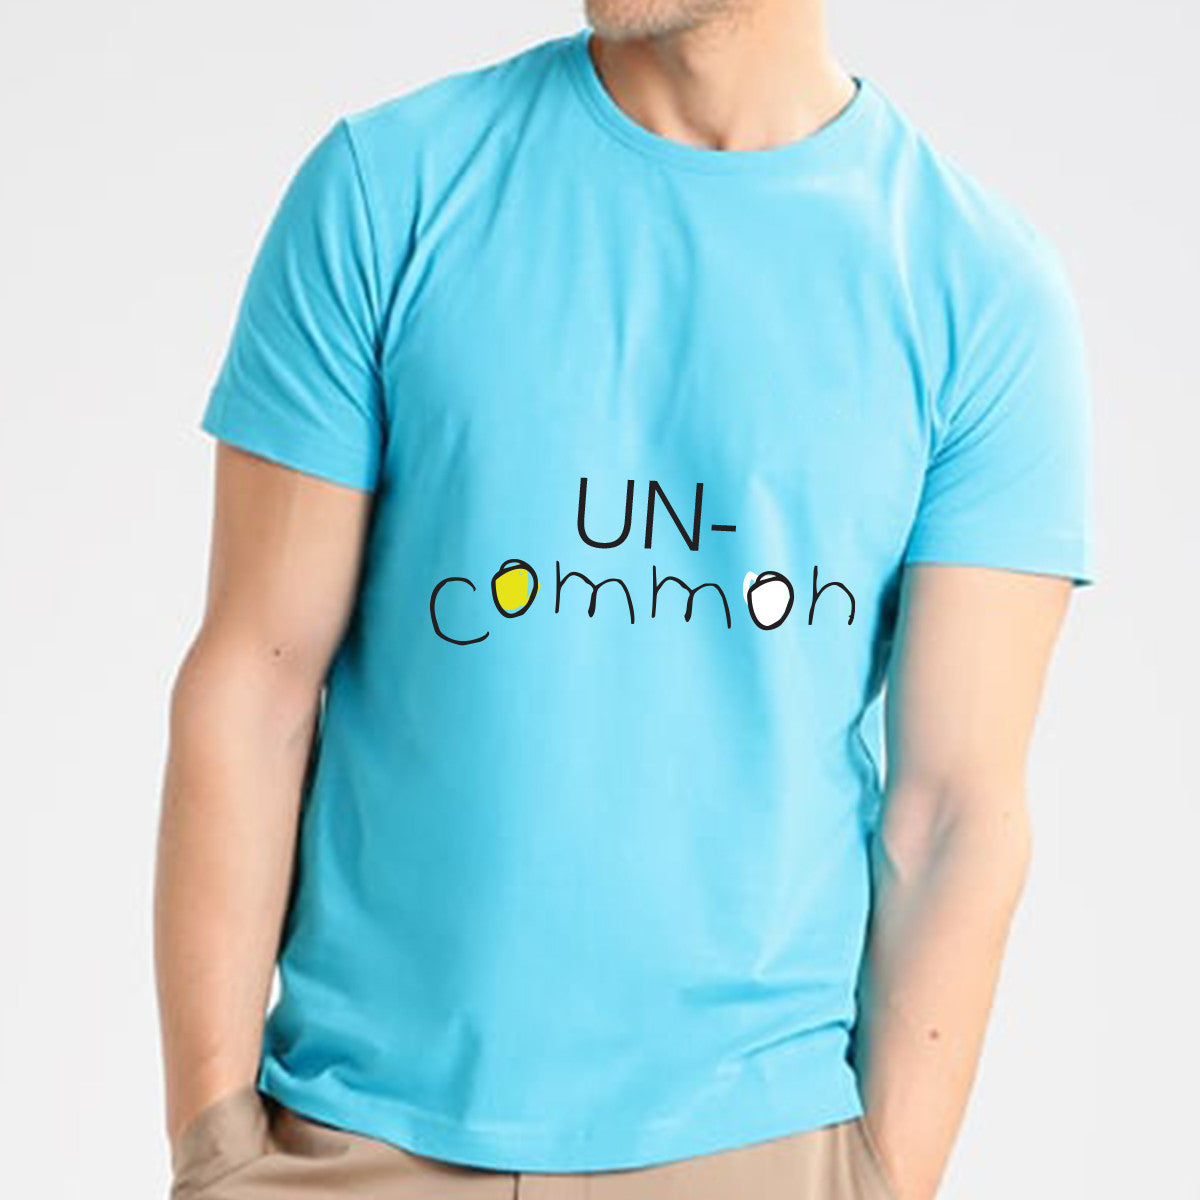 Uncommon Cyan T-shirt